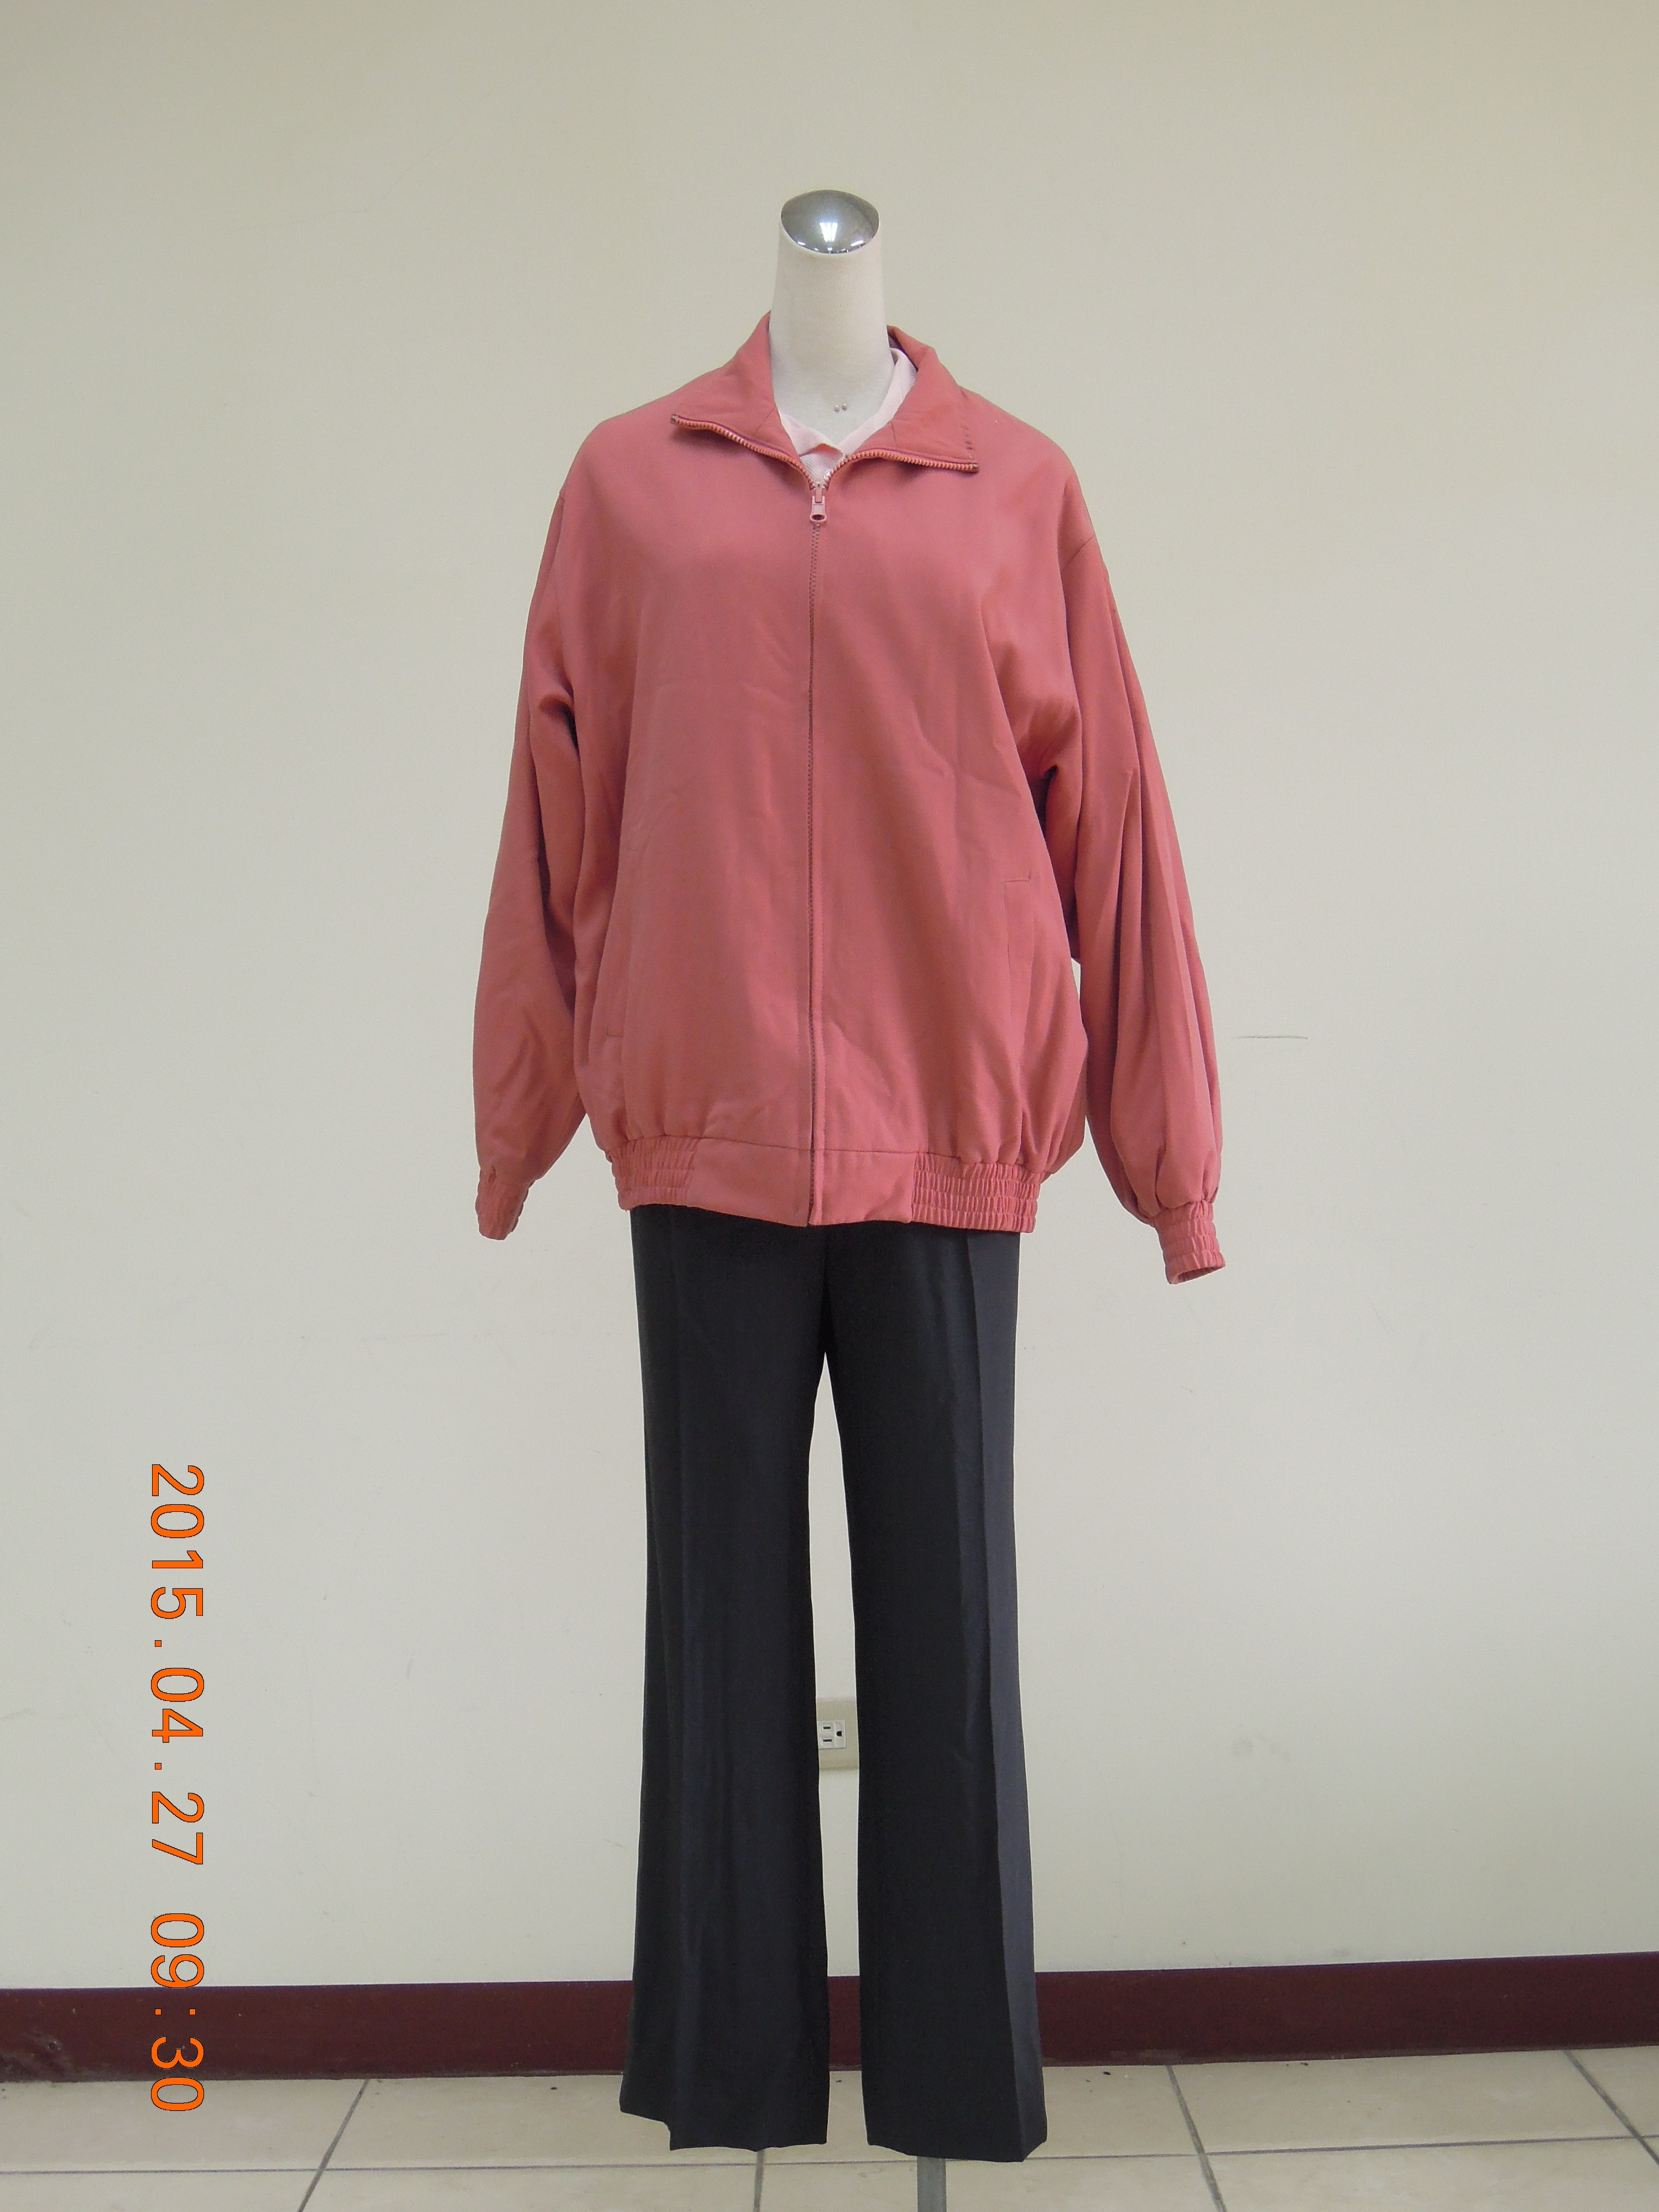 收費員制服之90至99年代冬橘粉上衣黑褲裝3